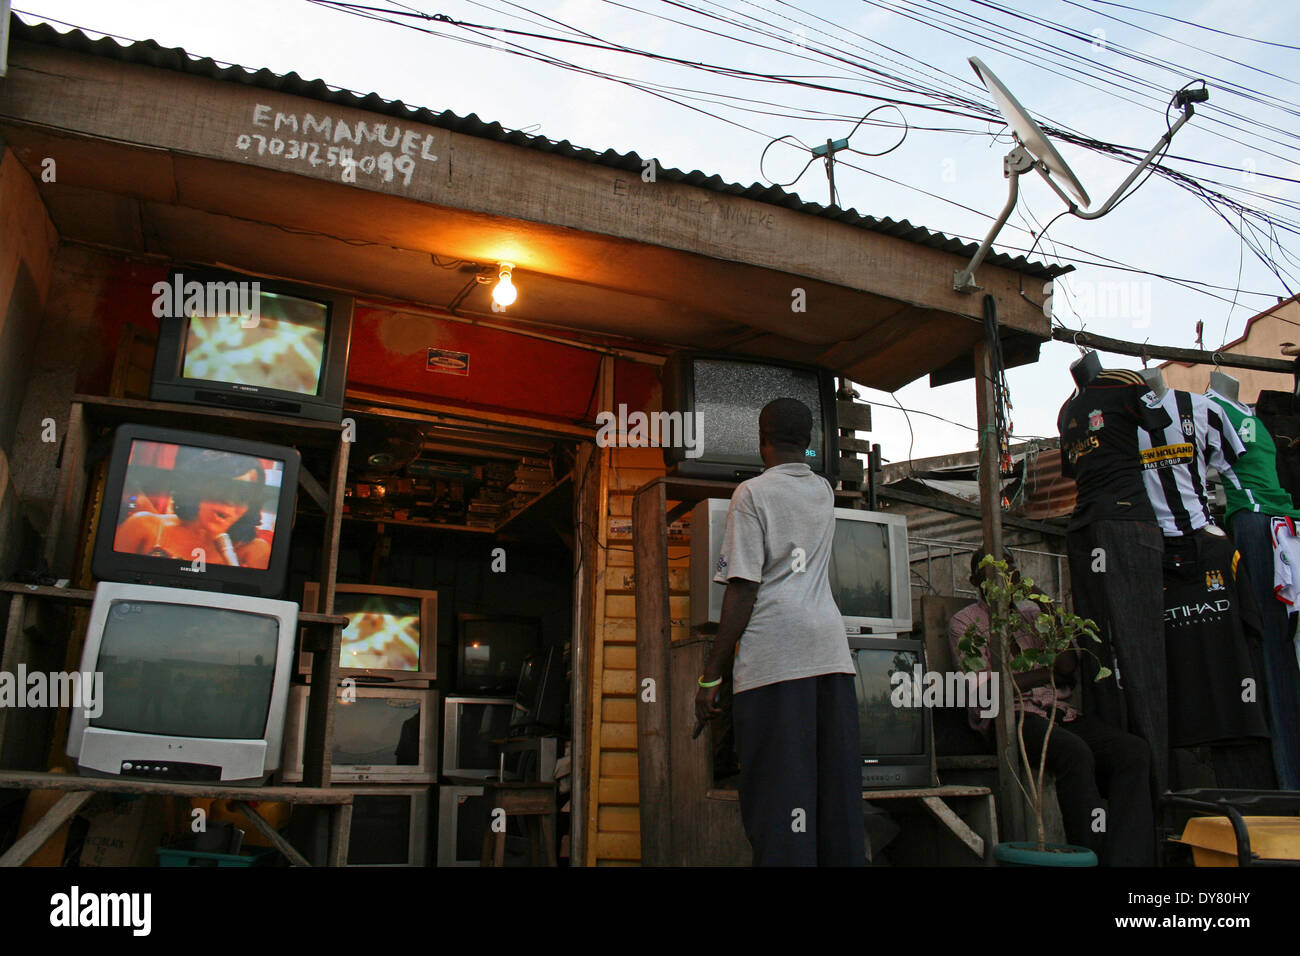 Fernsehgeräte auf dem Display vor einem lokalen Geschäft in Lagos, Nigeria am 9. Oktober 2010. Mit den Fortschritten in der modernen Technik, mehr l Stockfoto